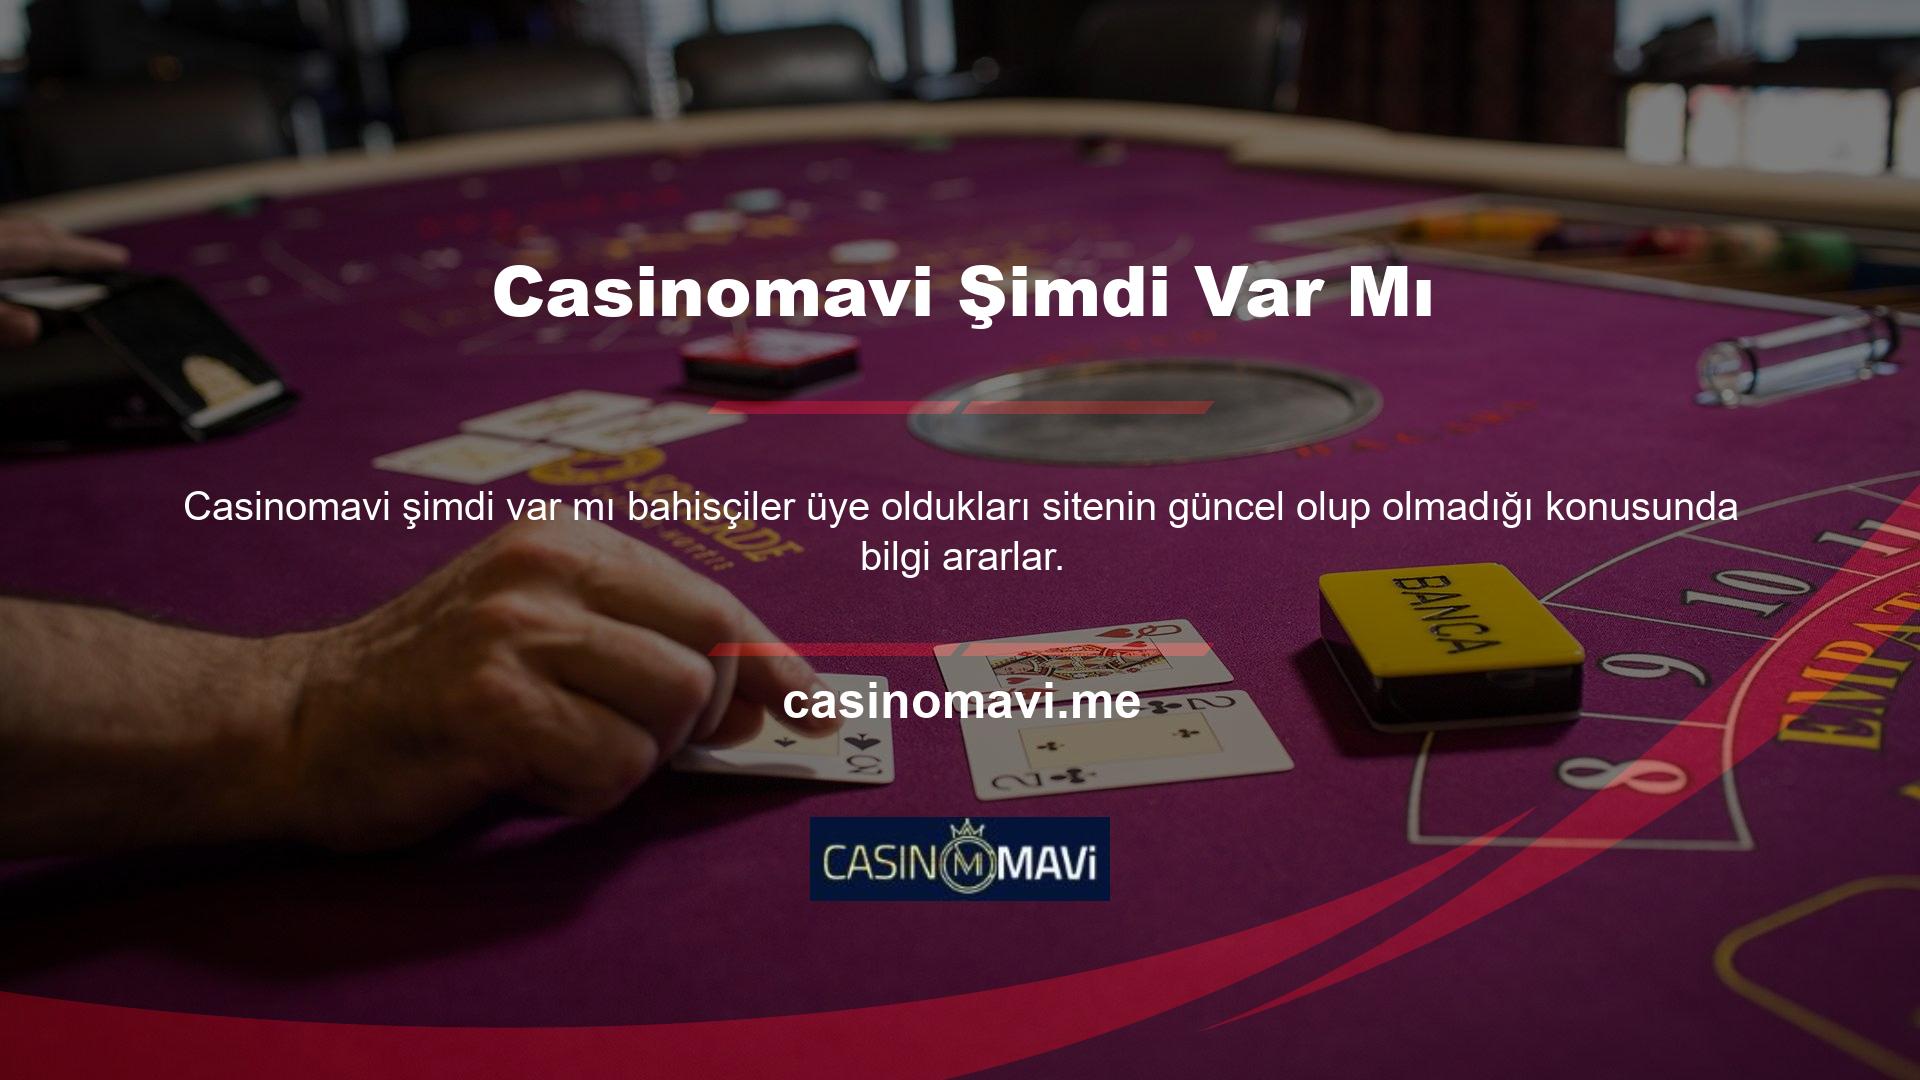 Türkiye pazarındaki yabancı casino siteleri bir süreliğine çevrimdışı kalacak